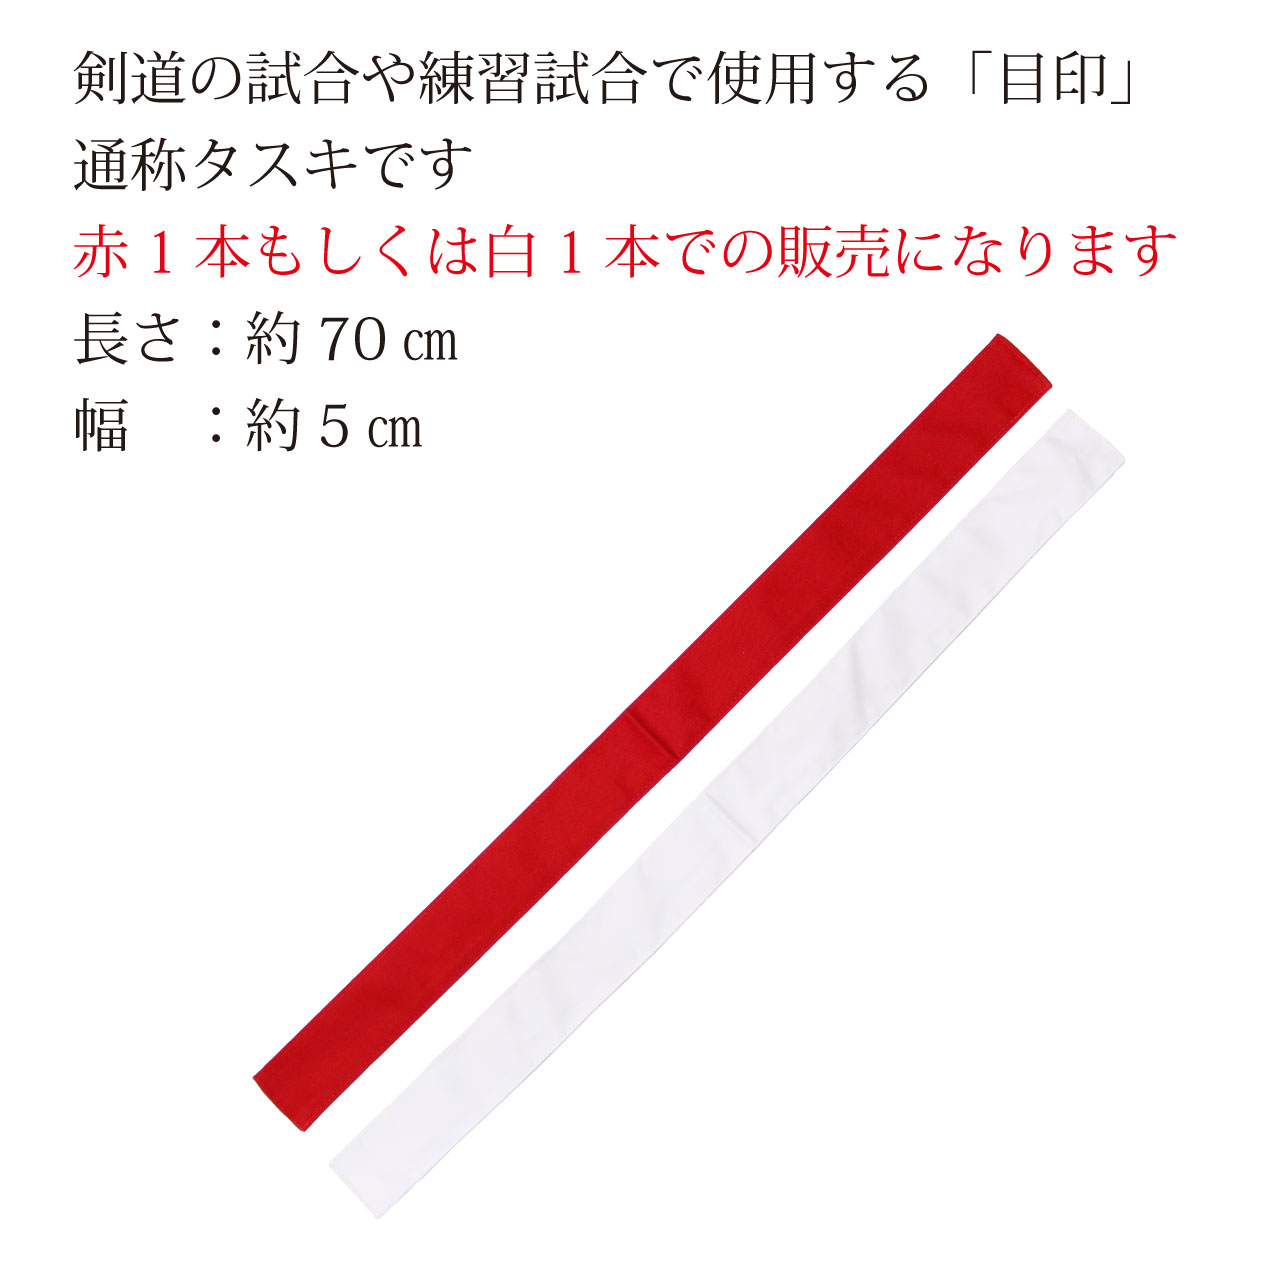 剣道の試合や練習試合で使用する【目印】通称タスキです。赤1本もしくは白1本での販売になります。